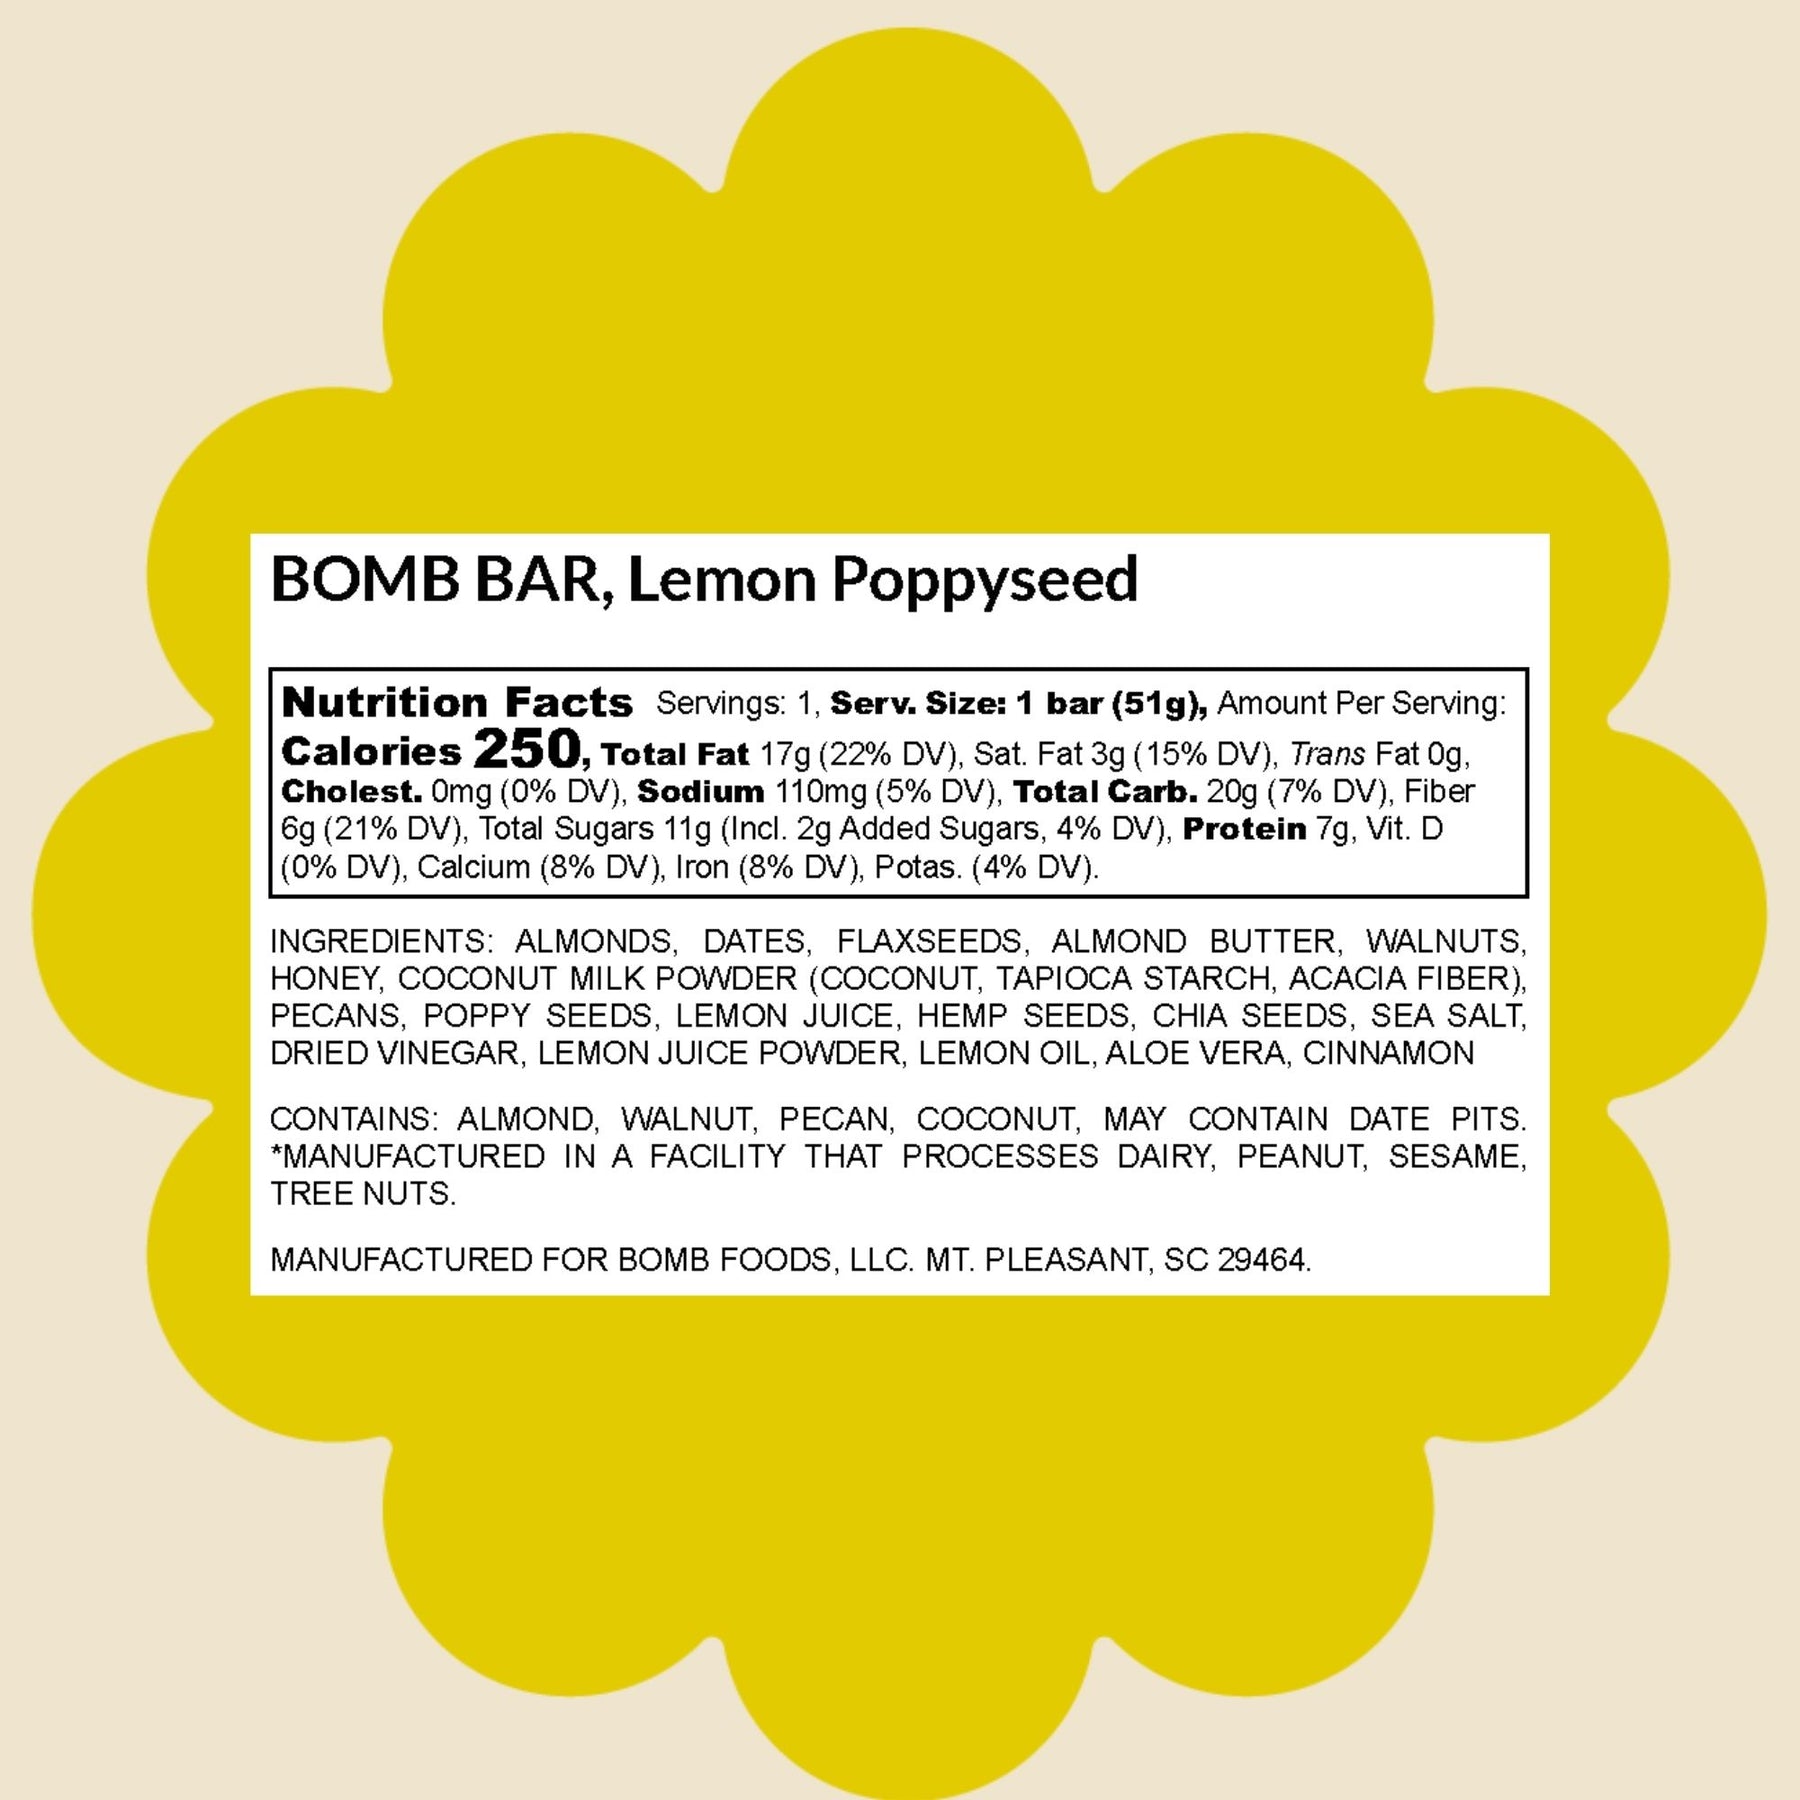 Lemon Poppyseed Blender Bombs Bomb Bar